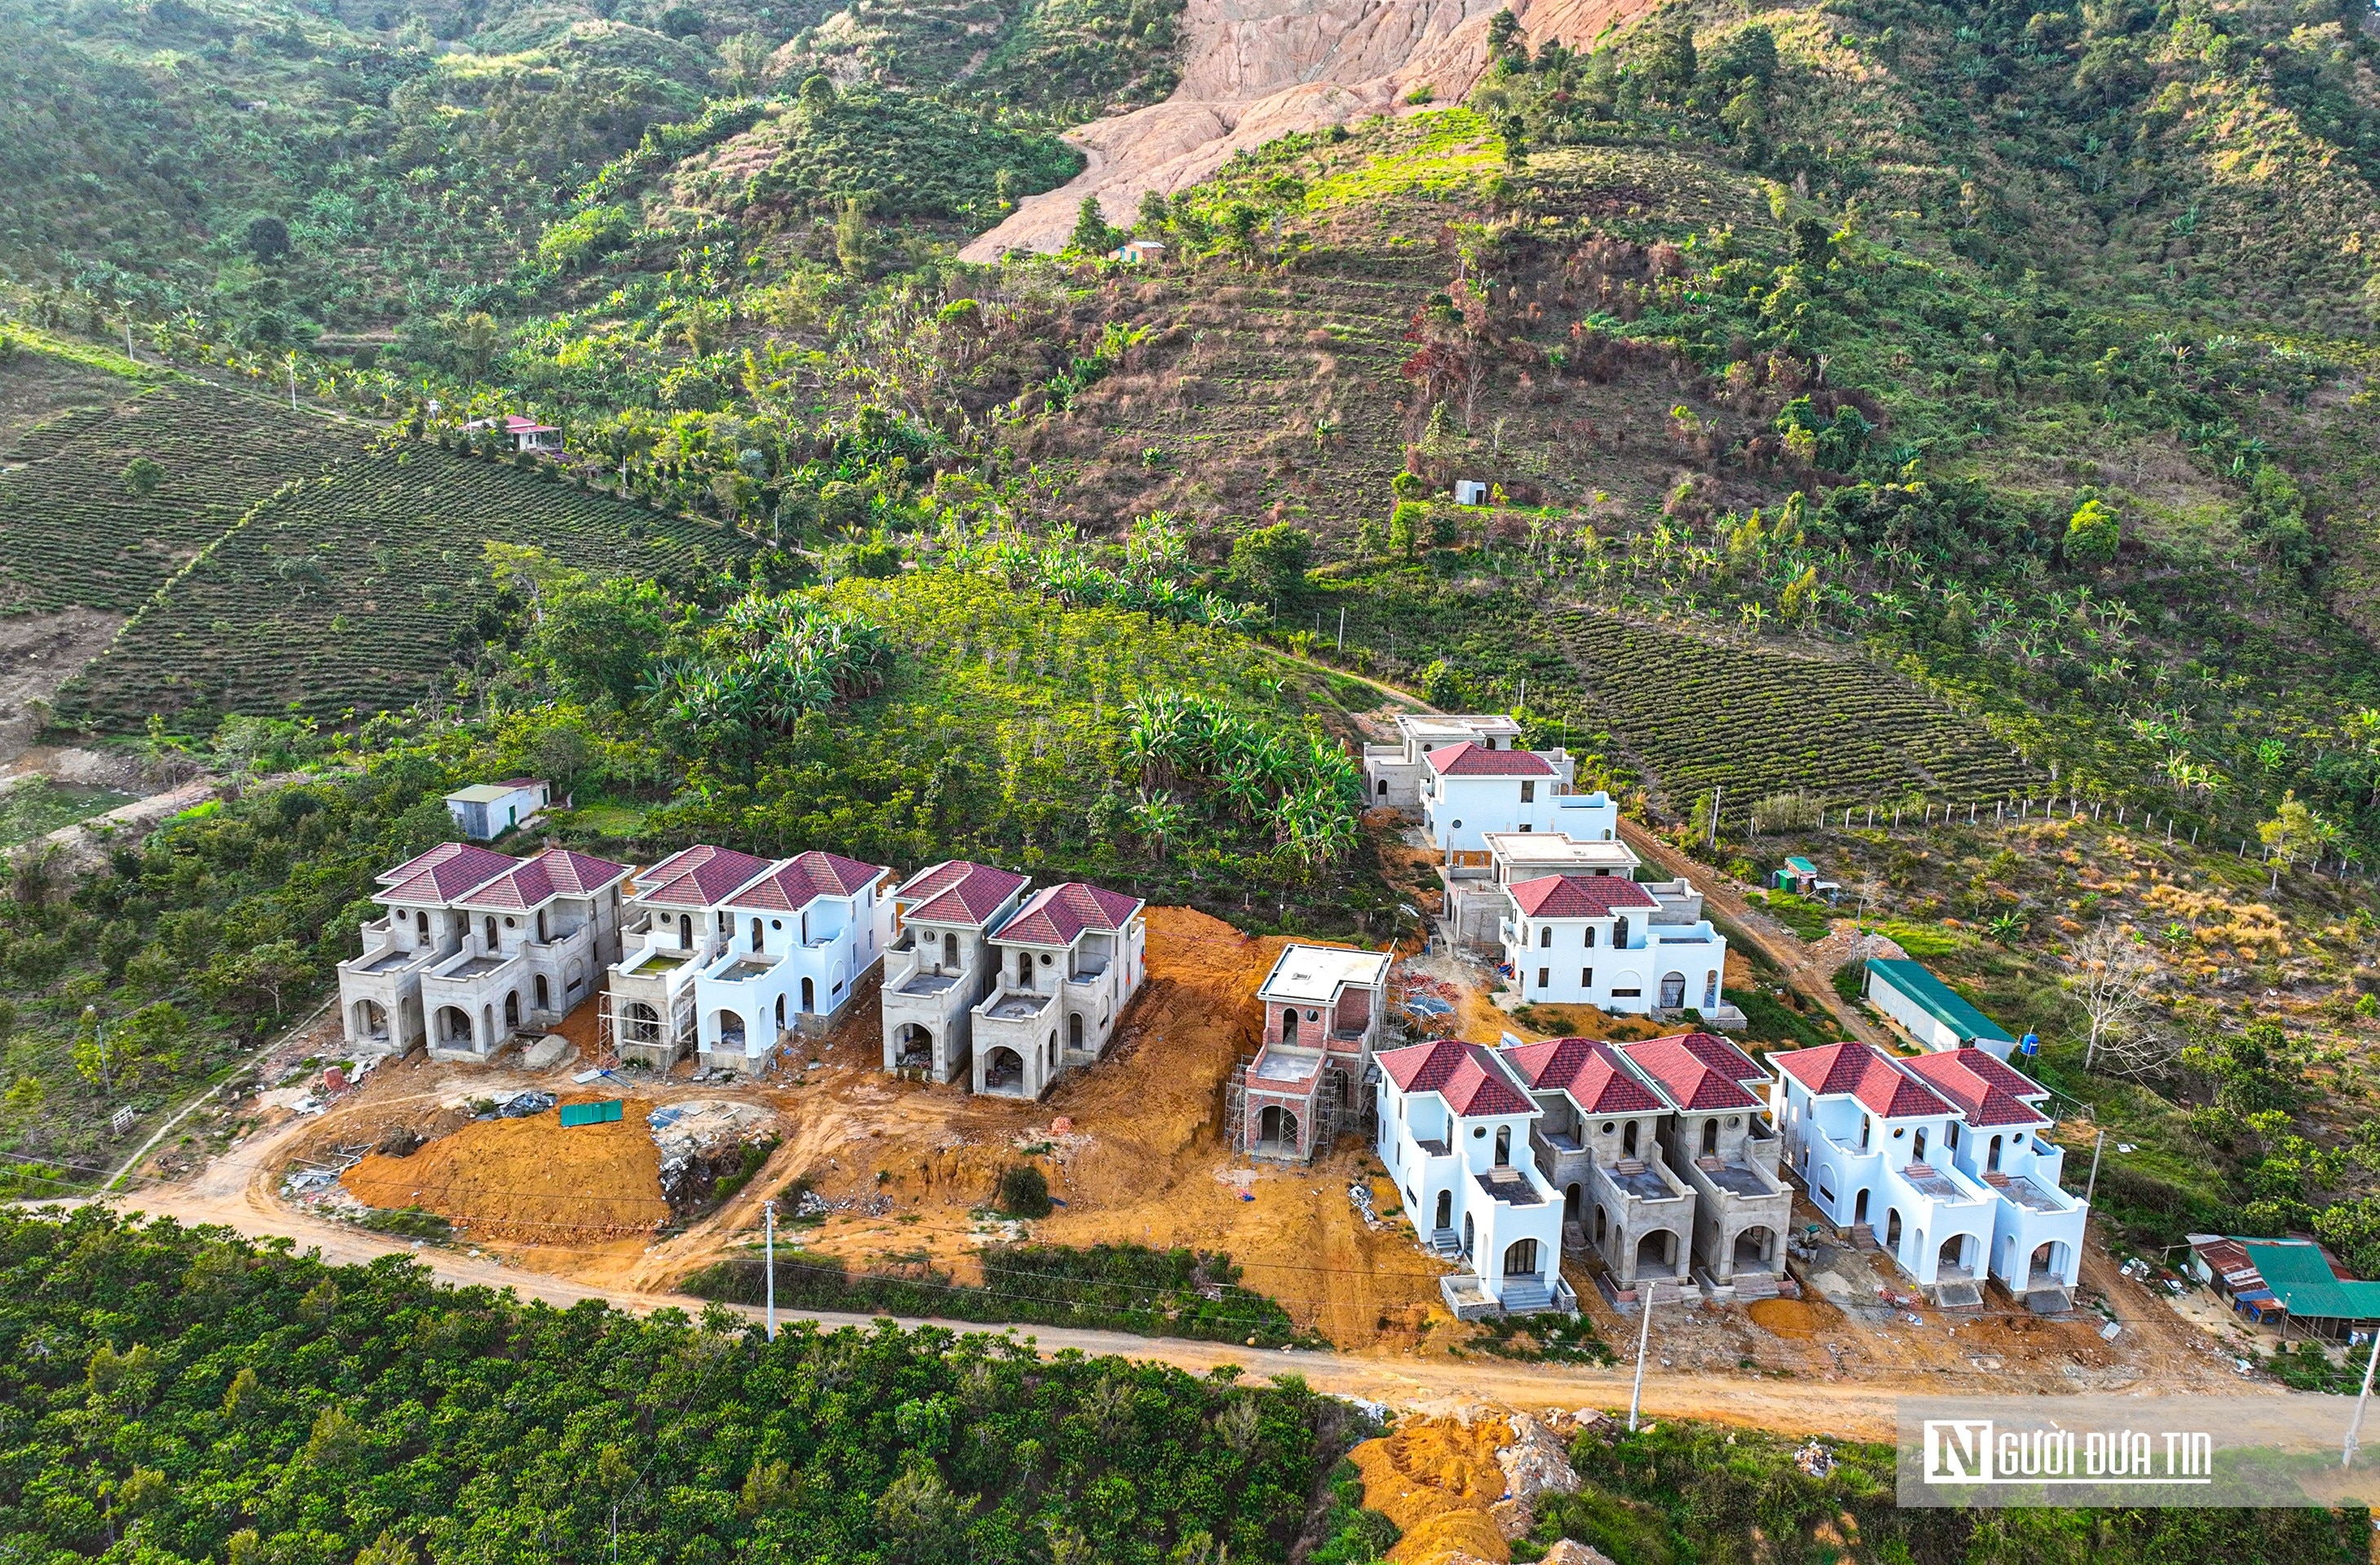 Bất động sản - Lâm Đồng: Huyện Bảo Lâm xin gia hạn việc xử lý 22 căn nhà liền kề trái phép (Hình 2).